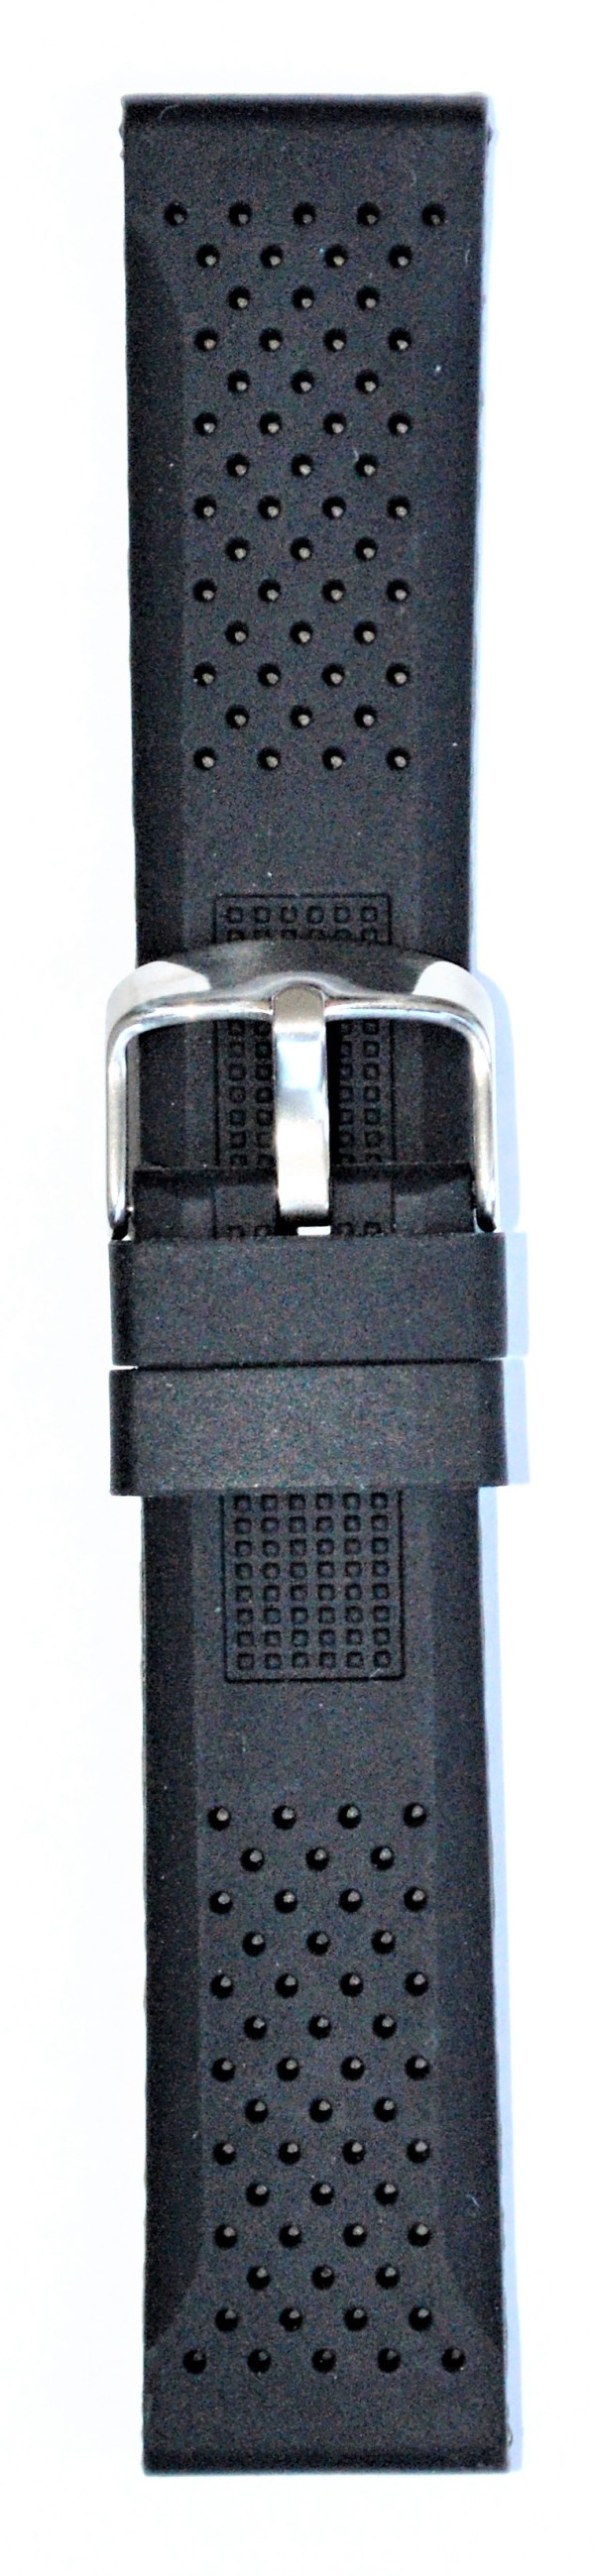 Silikonski kaiš - SK 24.46 Crna boja 24mm